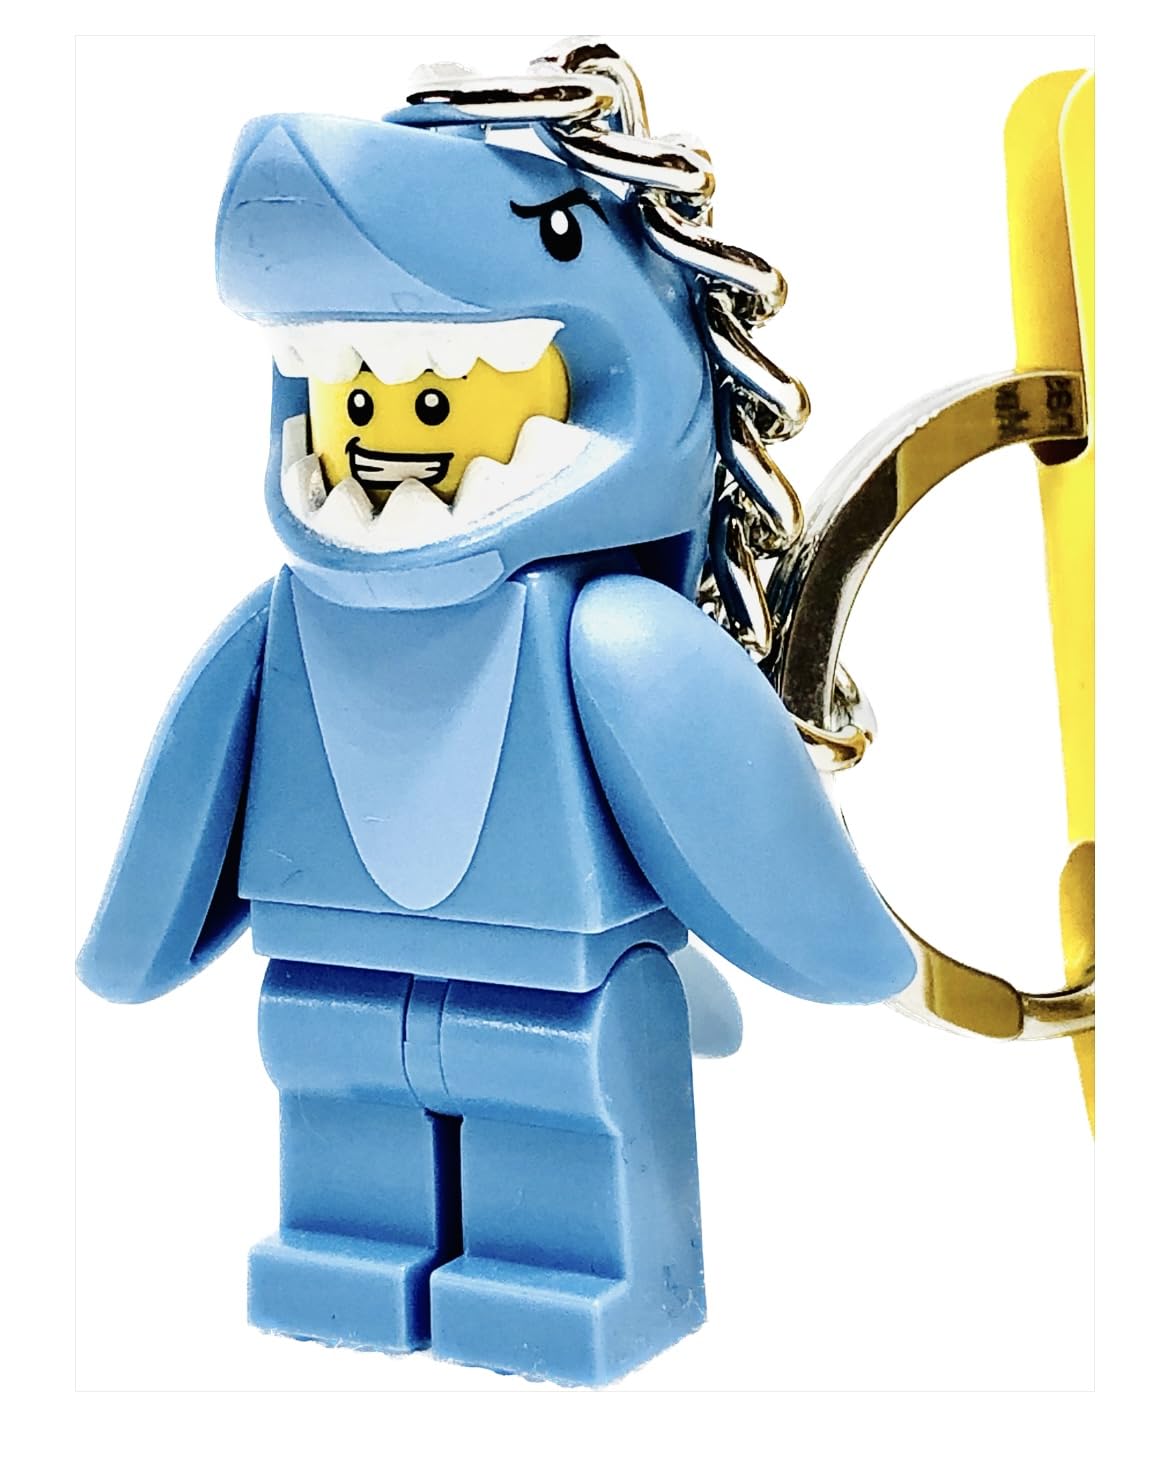 LEGO Schlüsselanhänger - Männchen im Haikostüm - ab 6 Jahren von LEGO